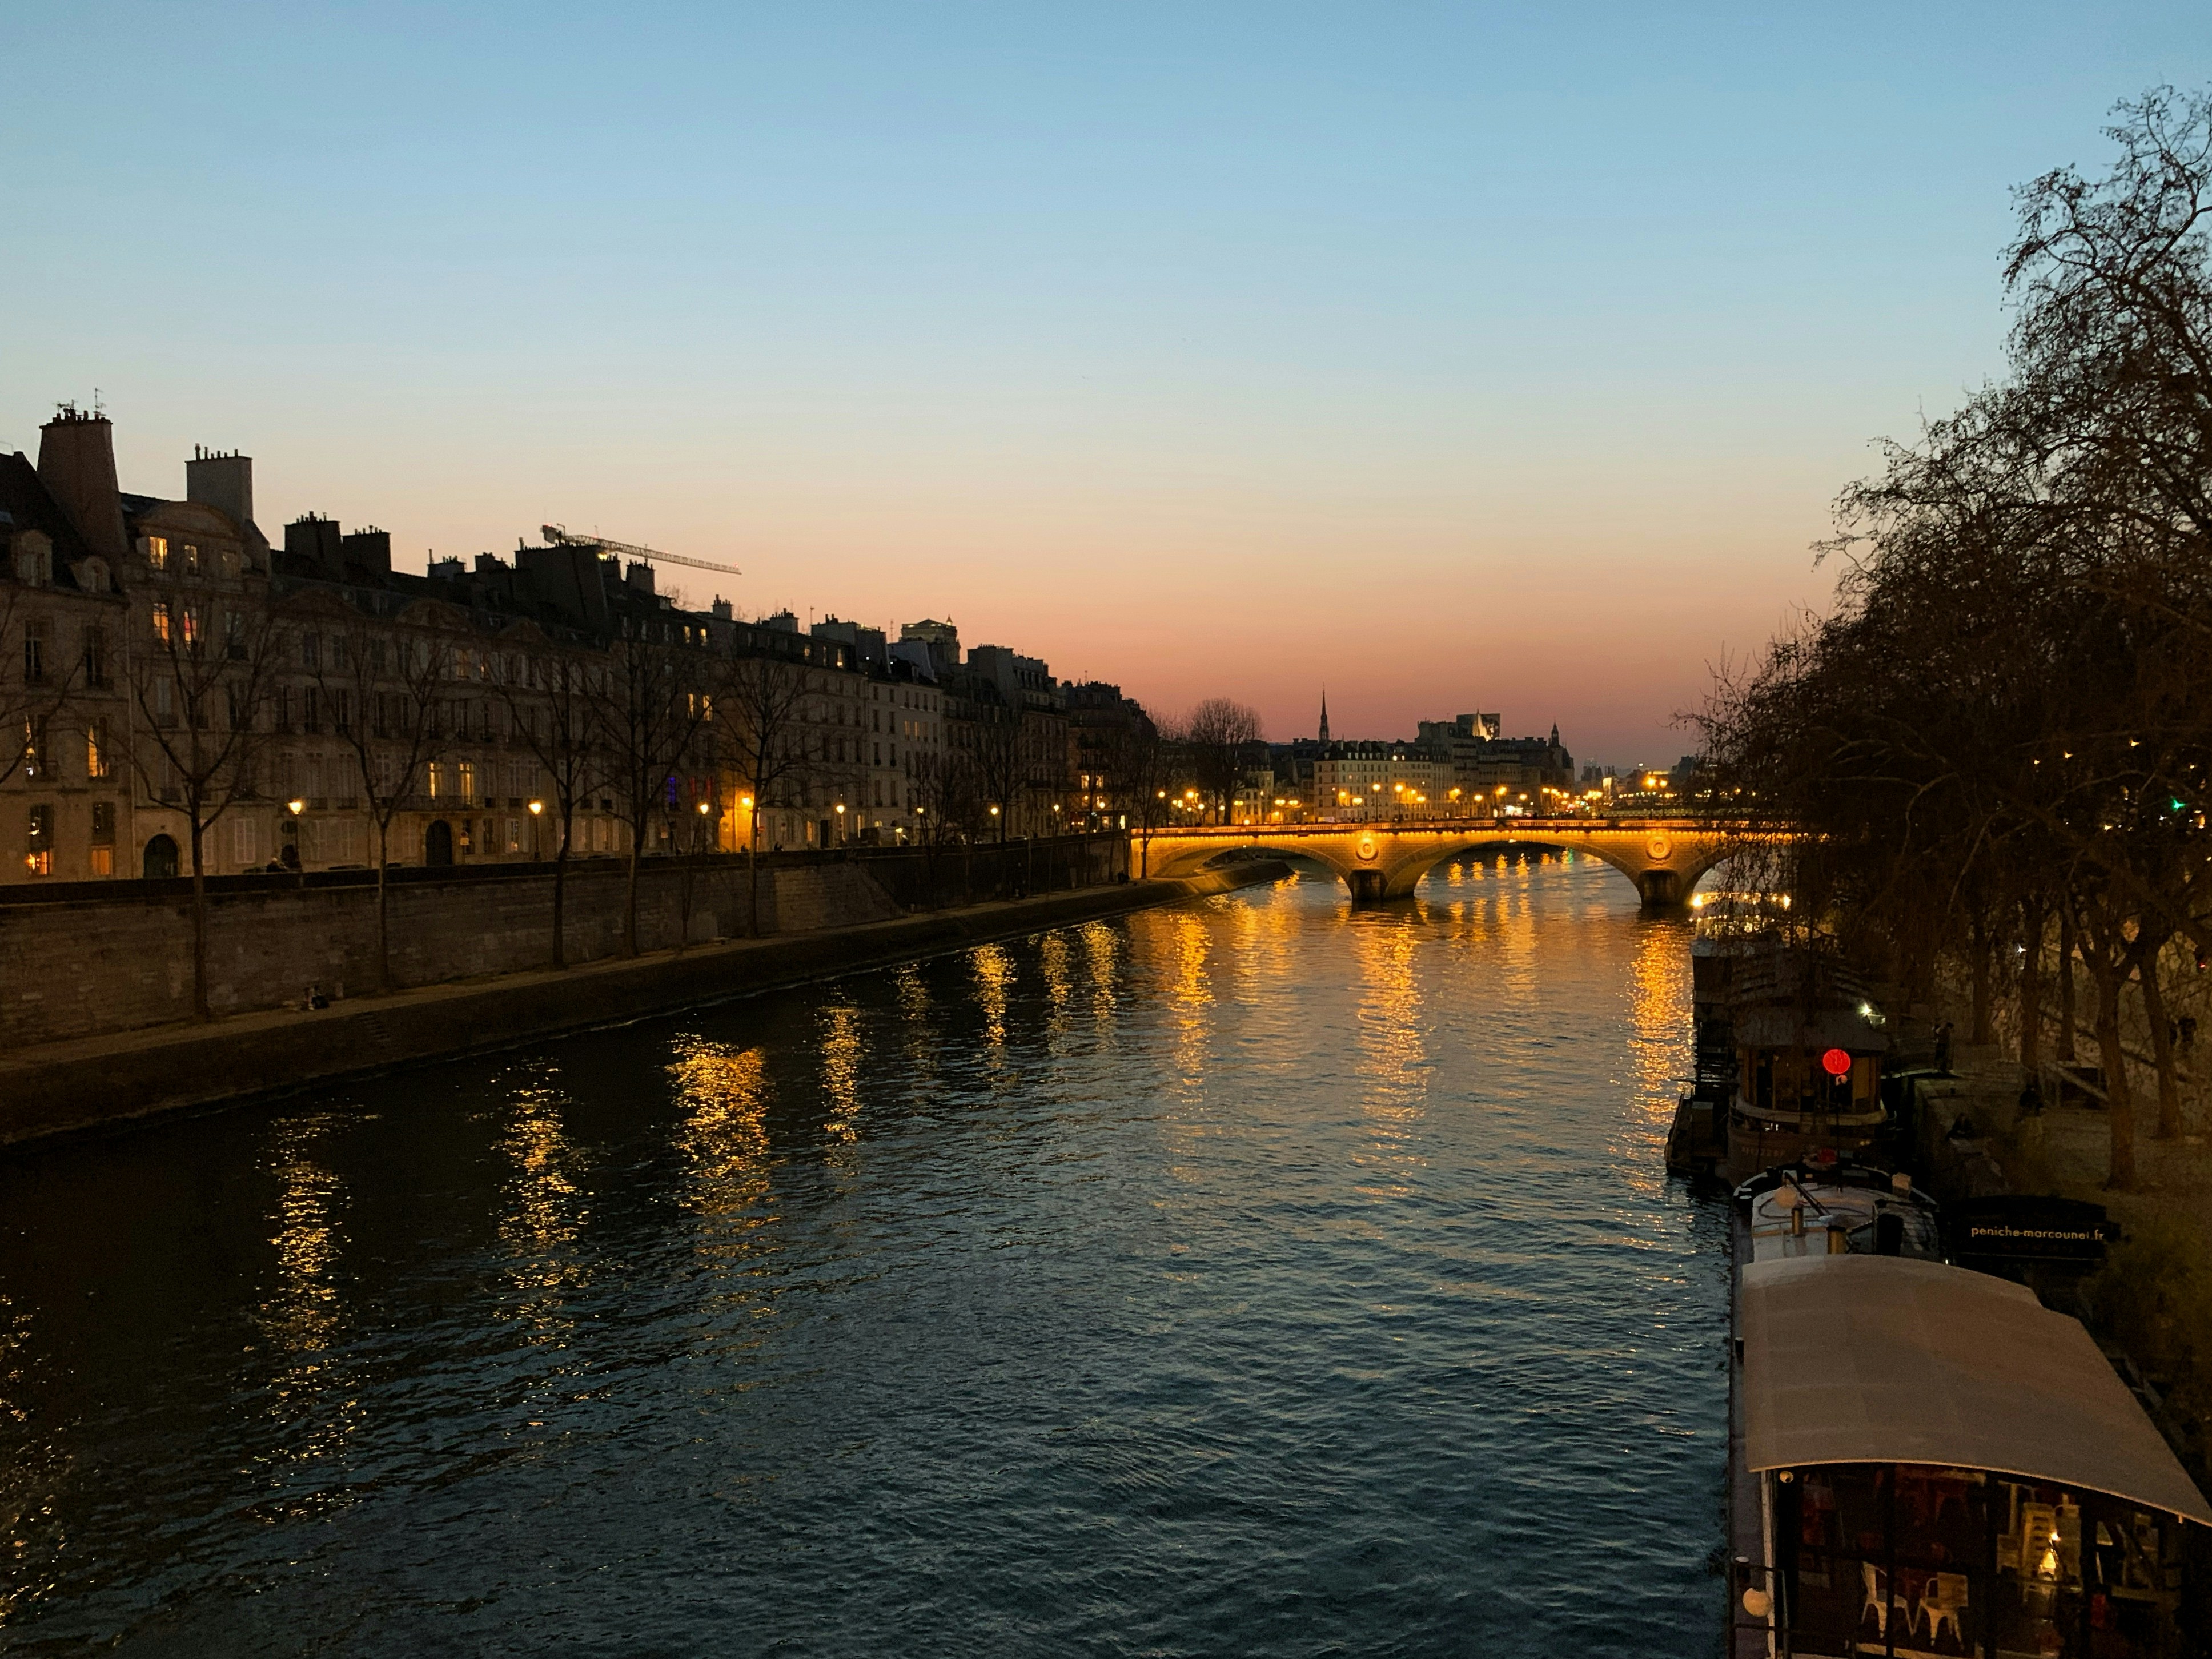 Sunset over La Seine, Paris.